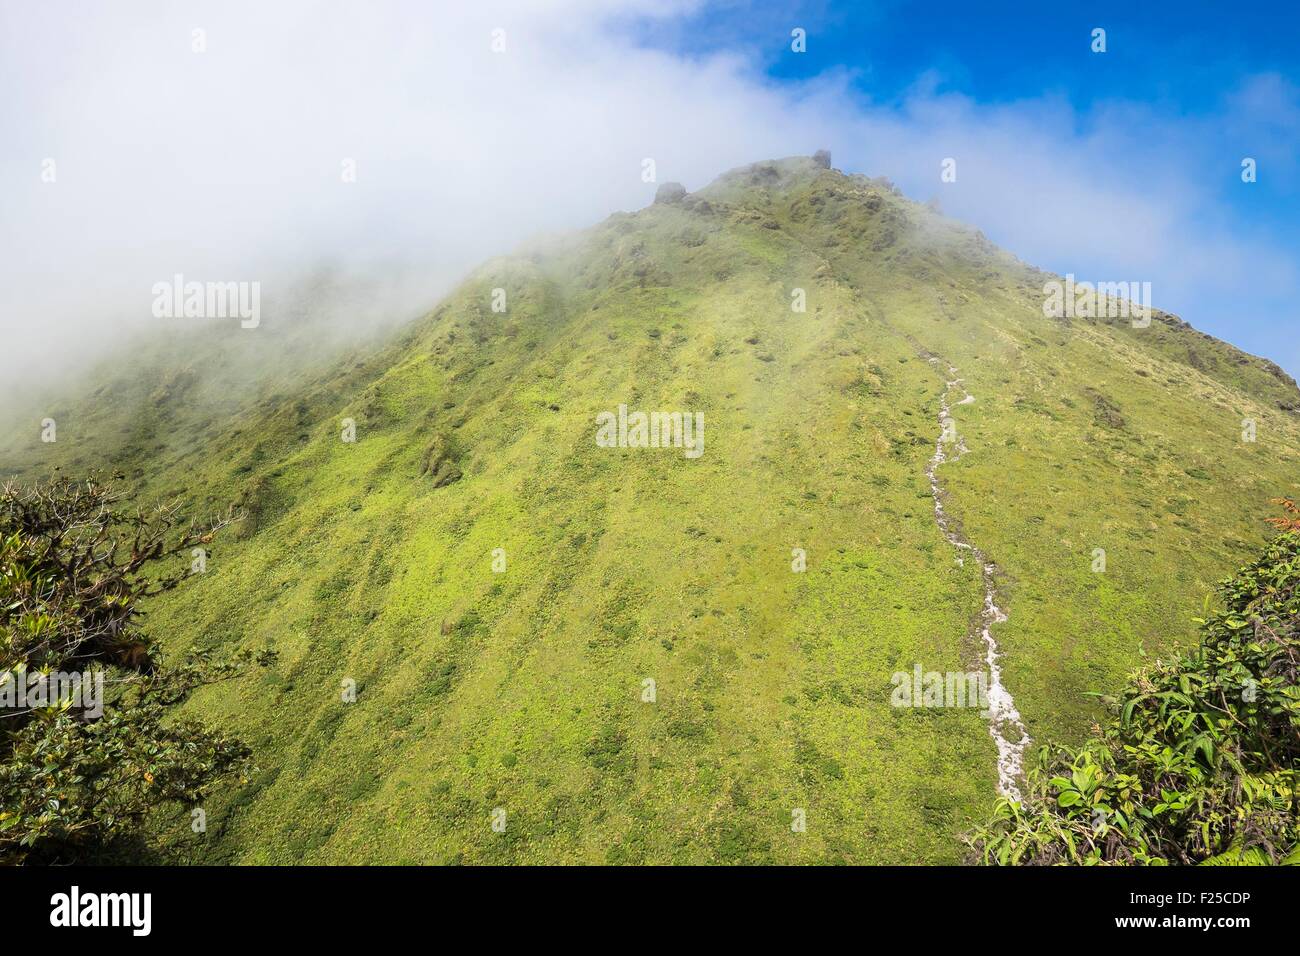 La France, la Martinique, La Montagne Pelée, volcan actif à l'extrémité nord de l'île Banque D'Images